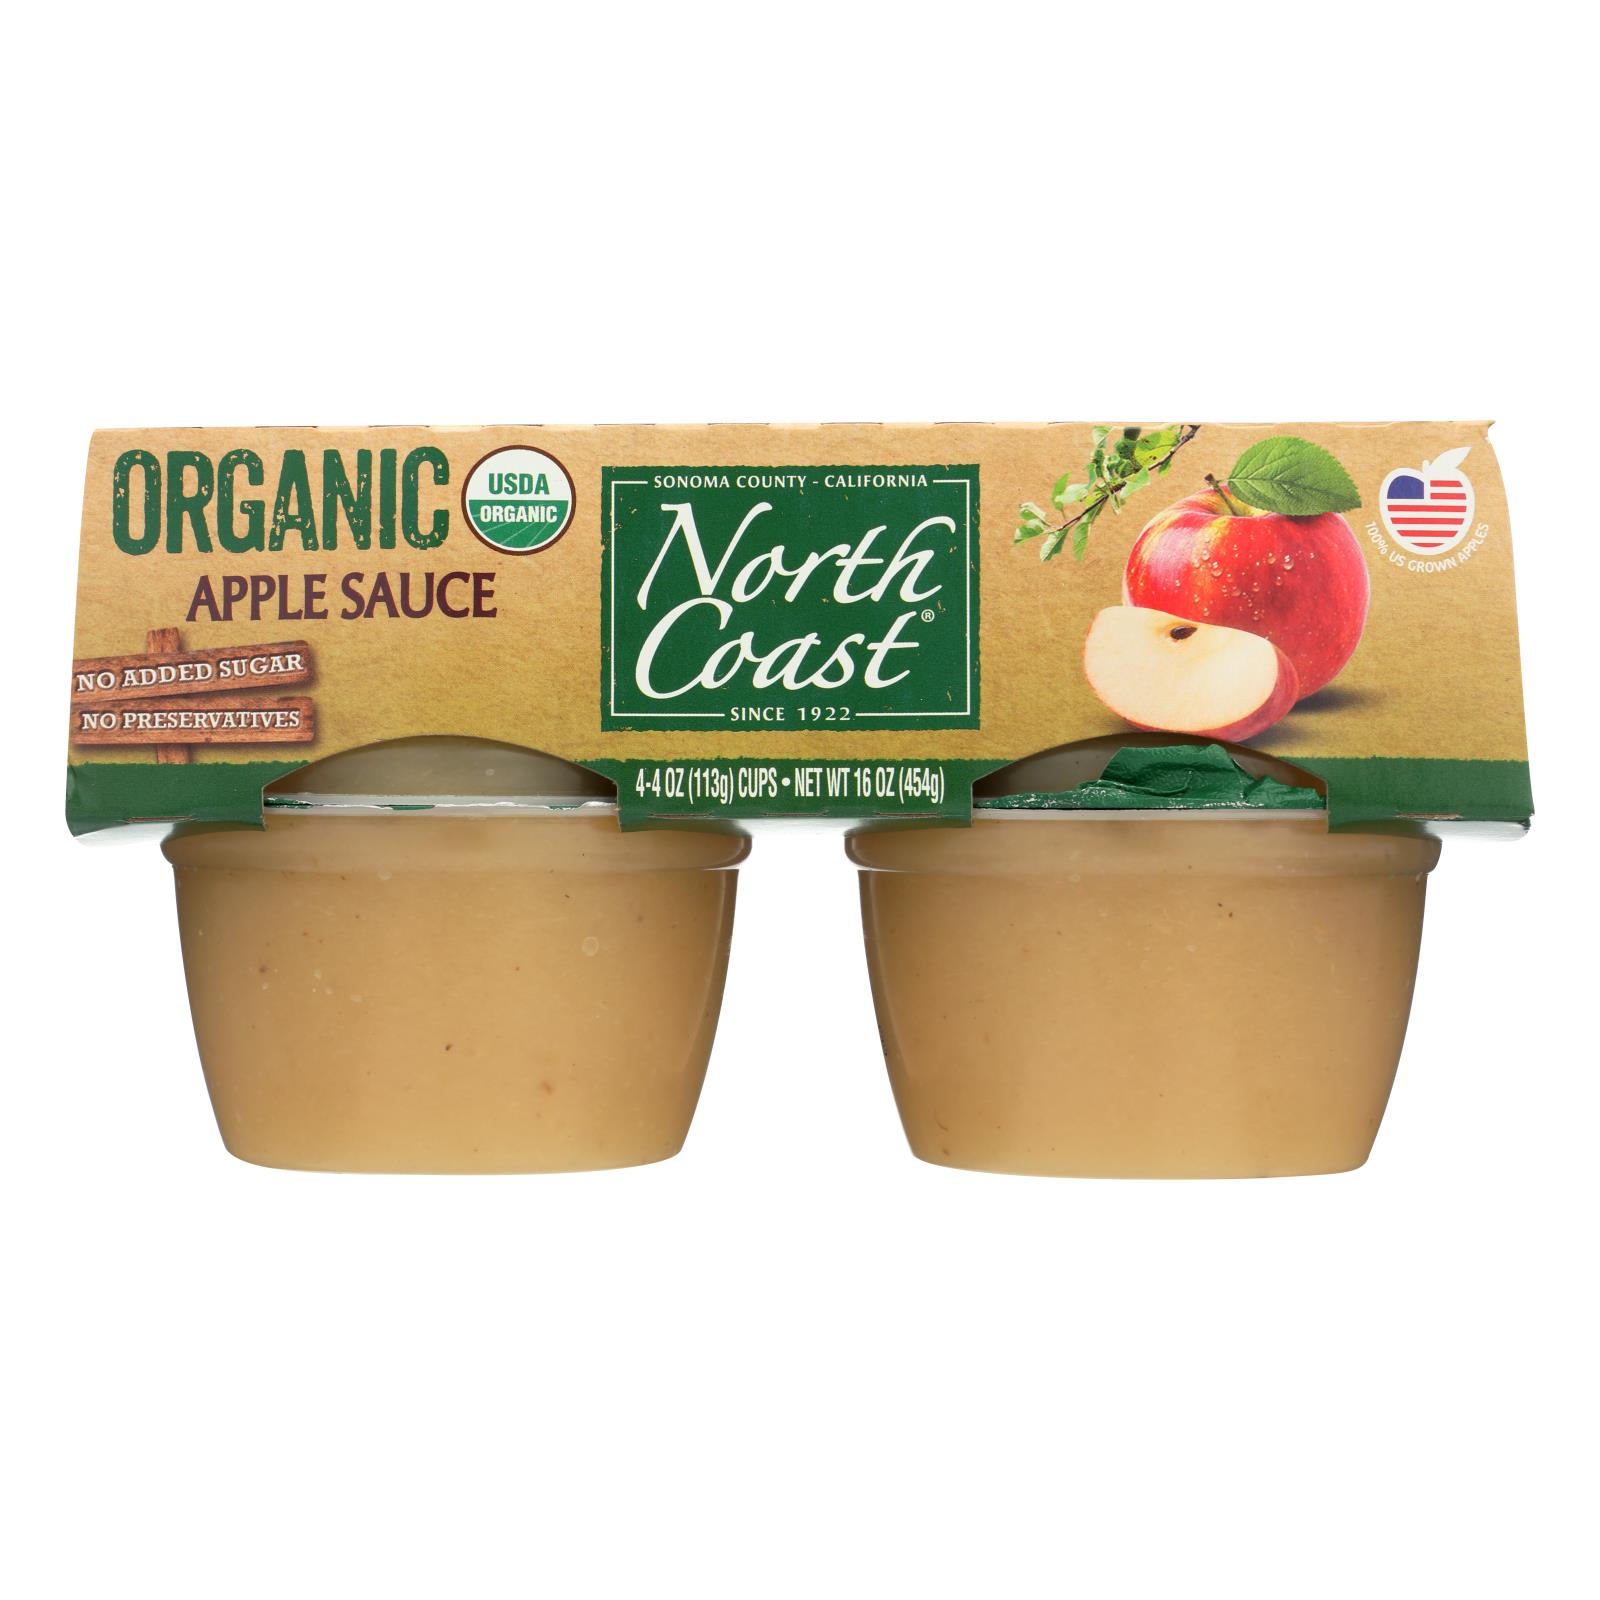 North Coast Organic Applesauce - 12개 묶음상품 - 4/4 OZ